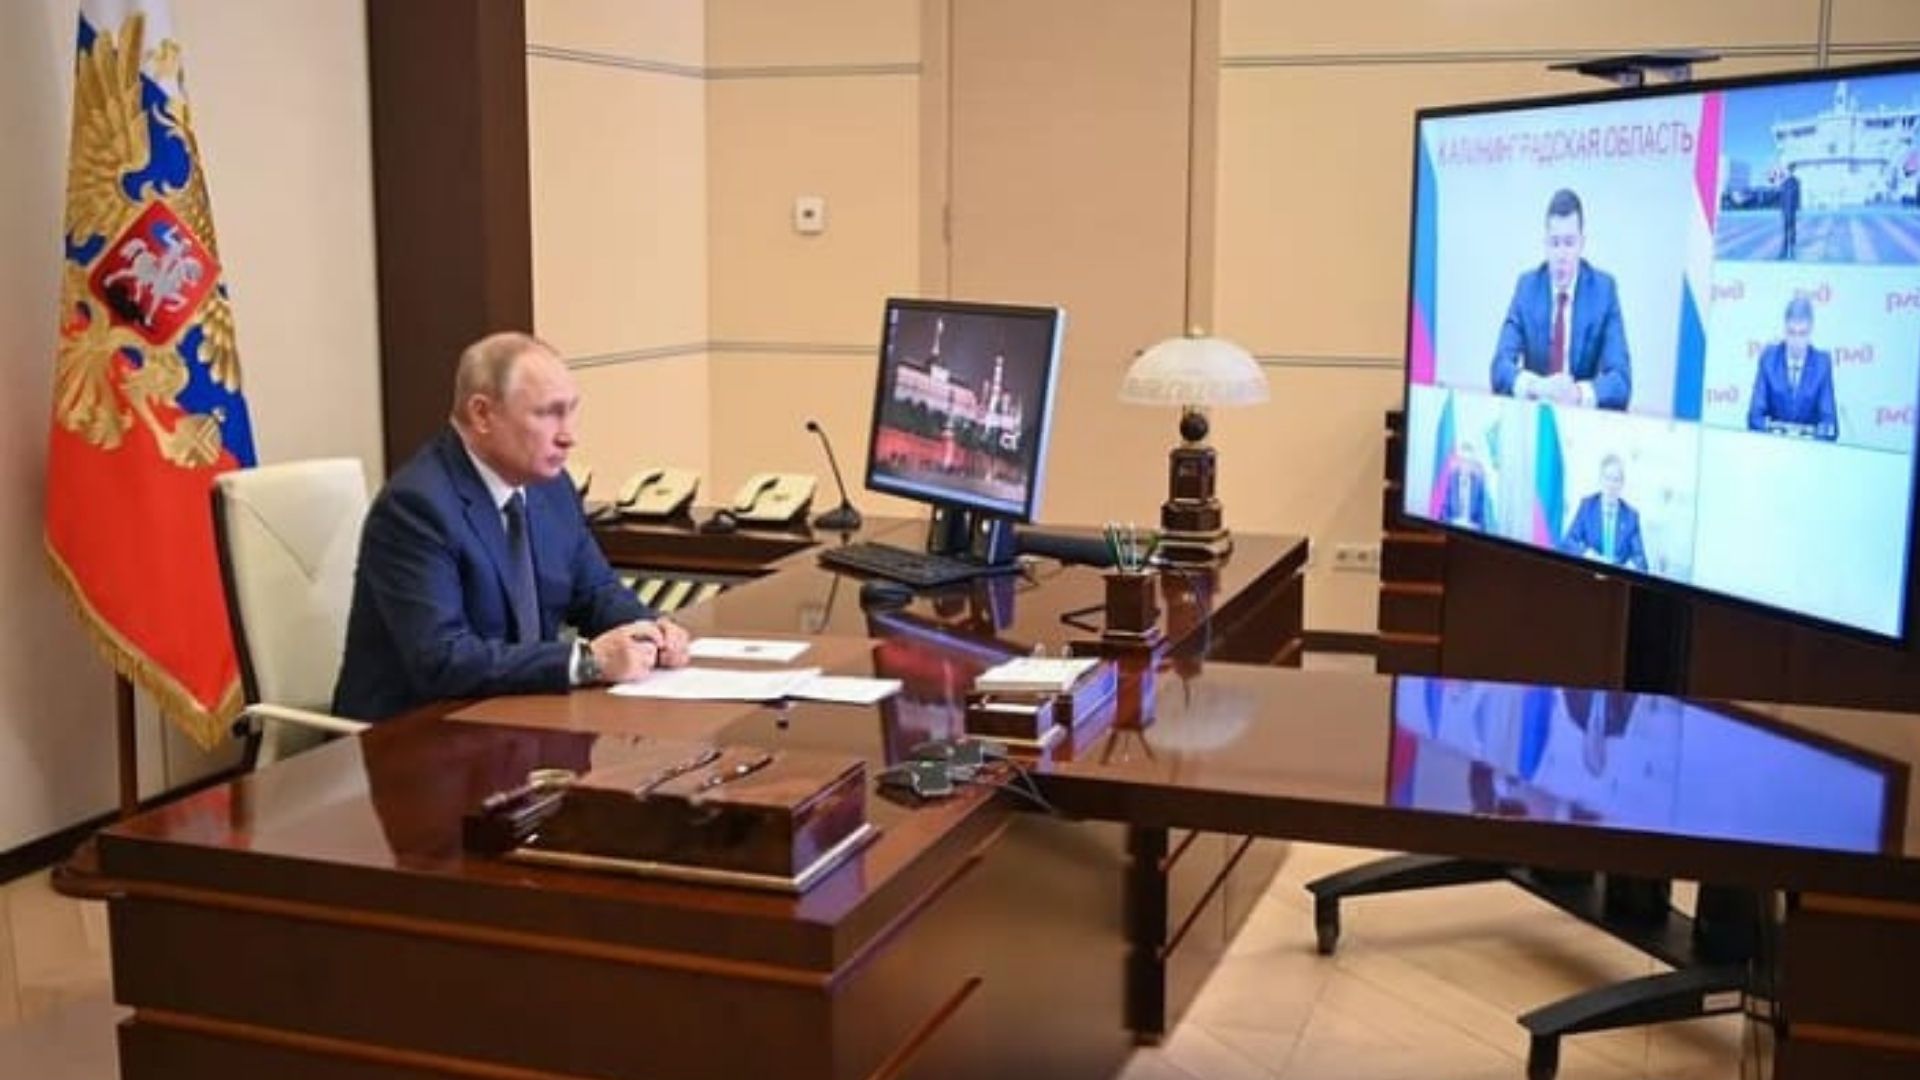 Foto: Reprodução do Instagram do presidente da Rússia